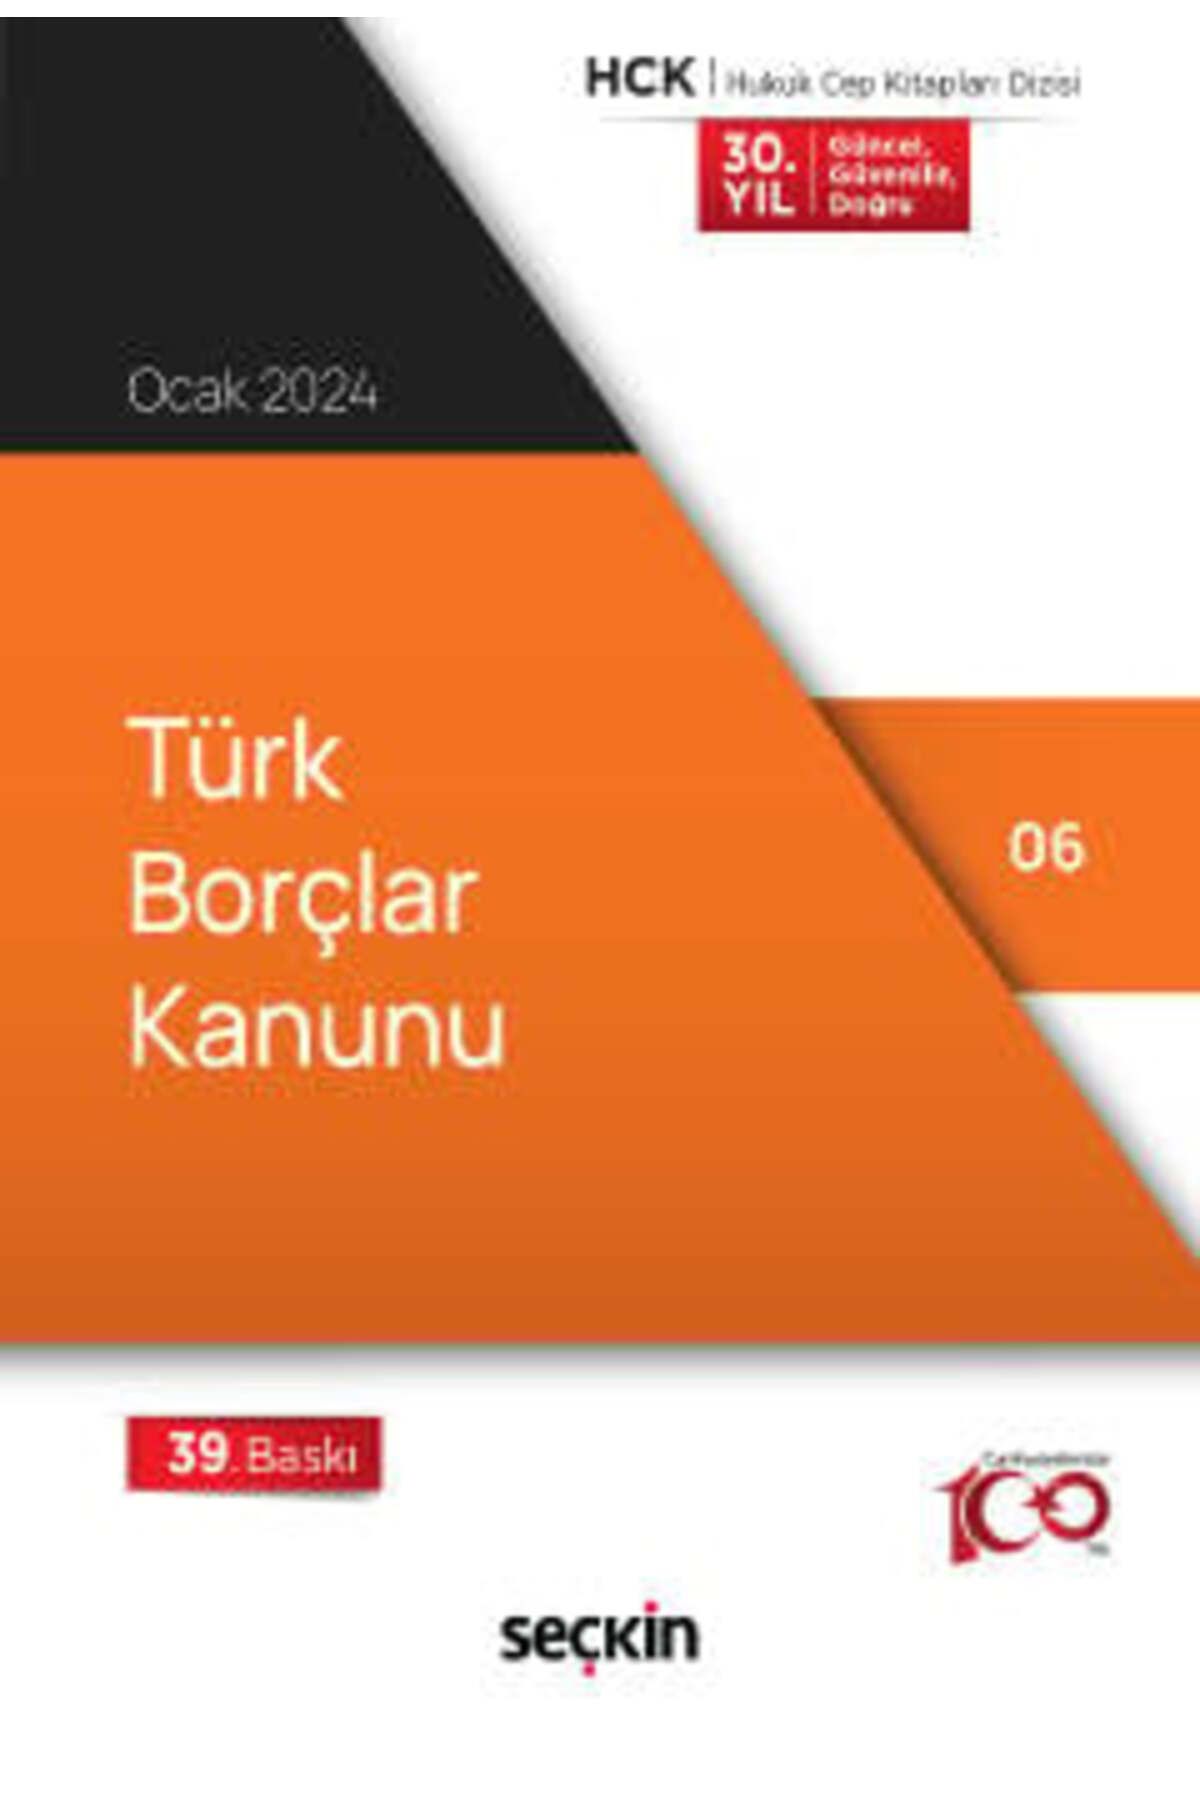 Seçkin Yayıncılık Türk Borçlar Kanunu Seçkin (Derleyen) 39. Baskı, Ocak 2024